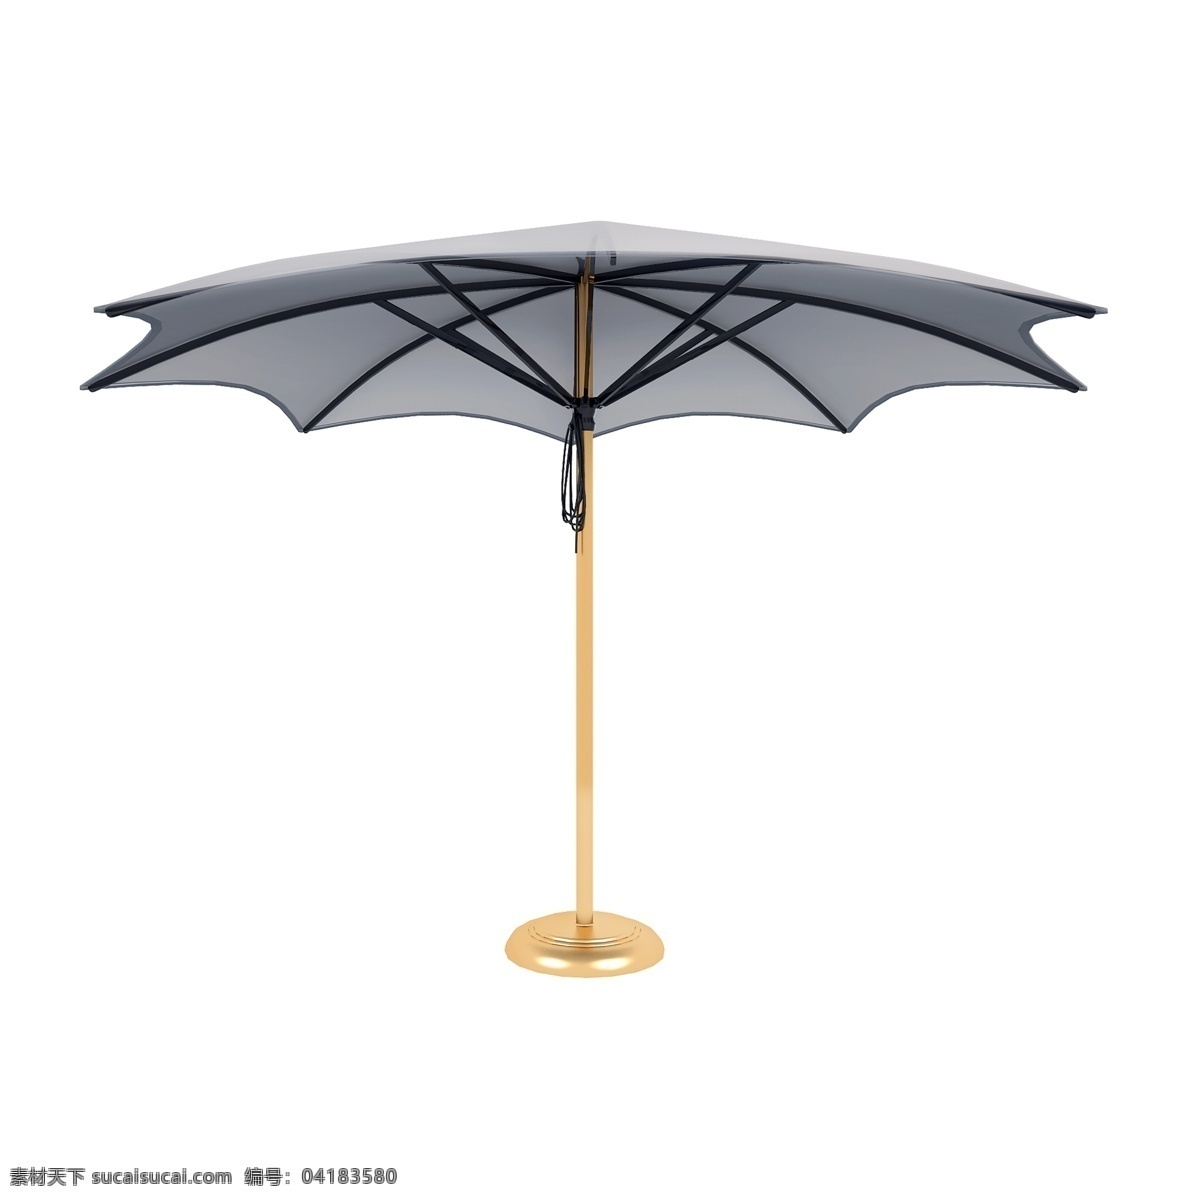 夏季 遮阳伞 图 户外 仿真 精致 质感 遮阳 套图